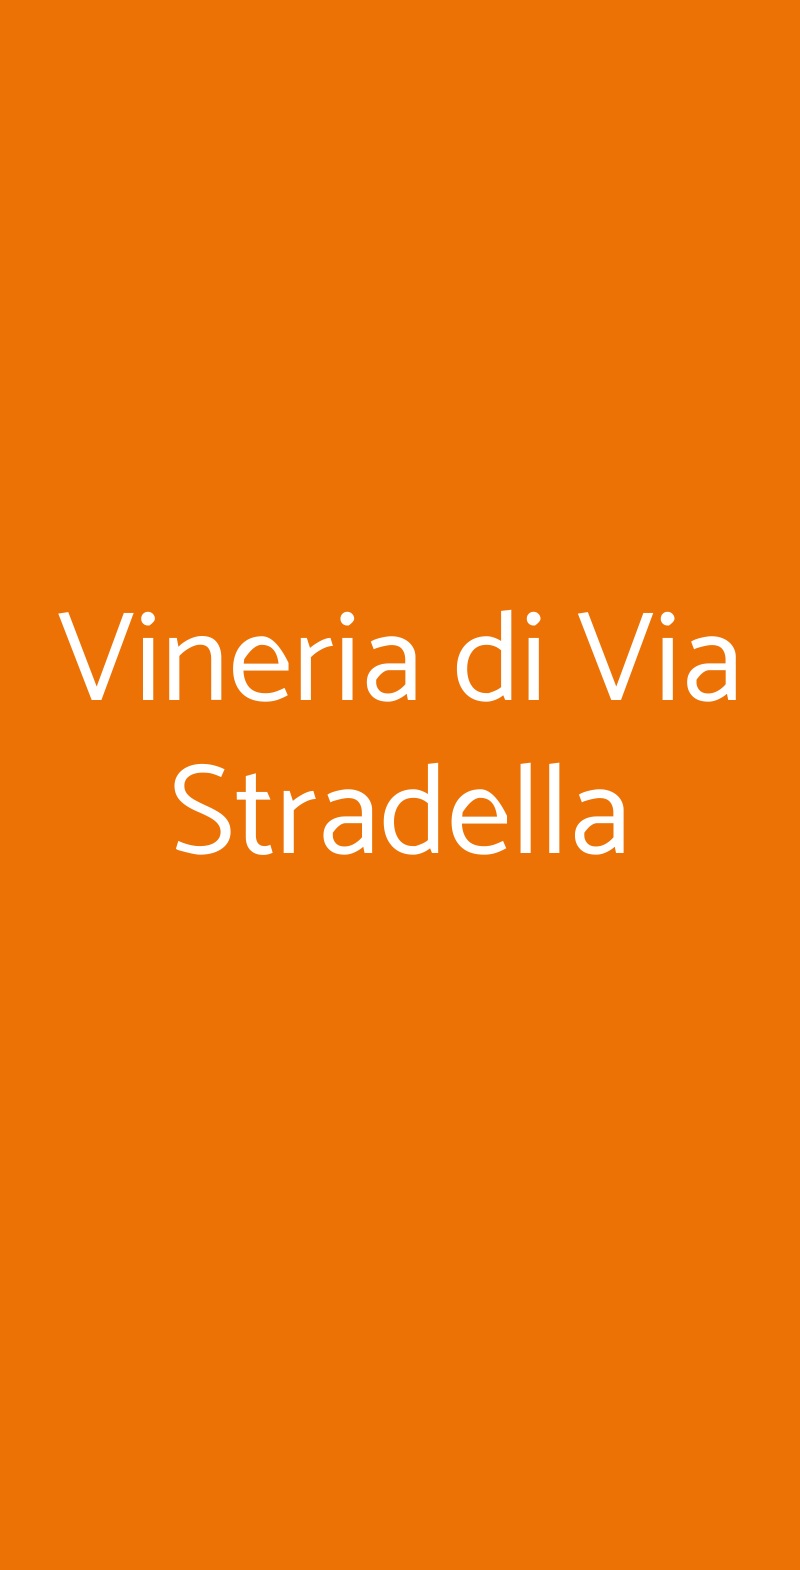 Vineria di Via Stradella Milano menù 1 pagina